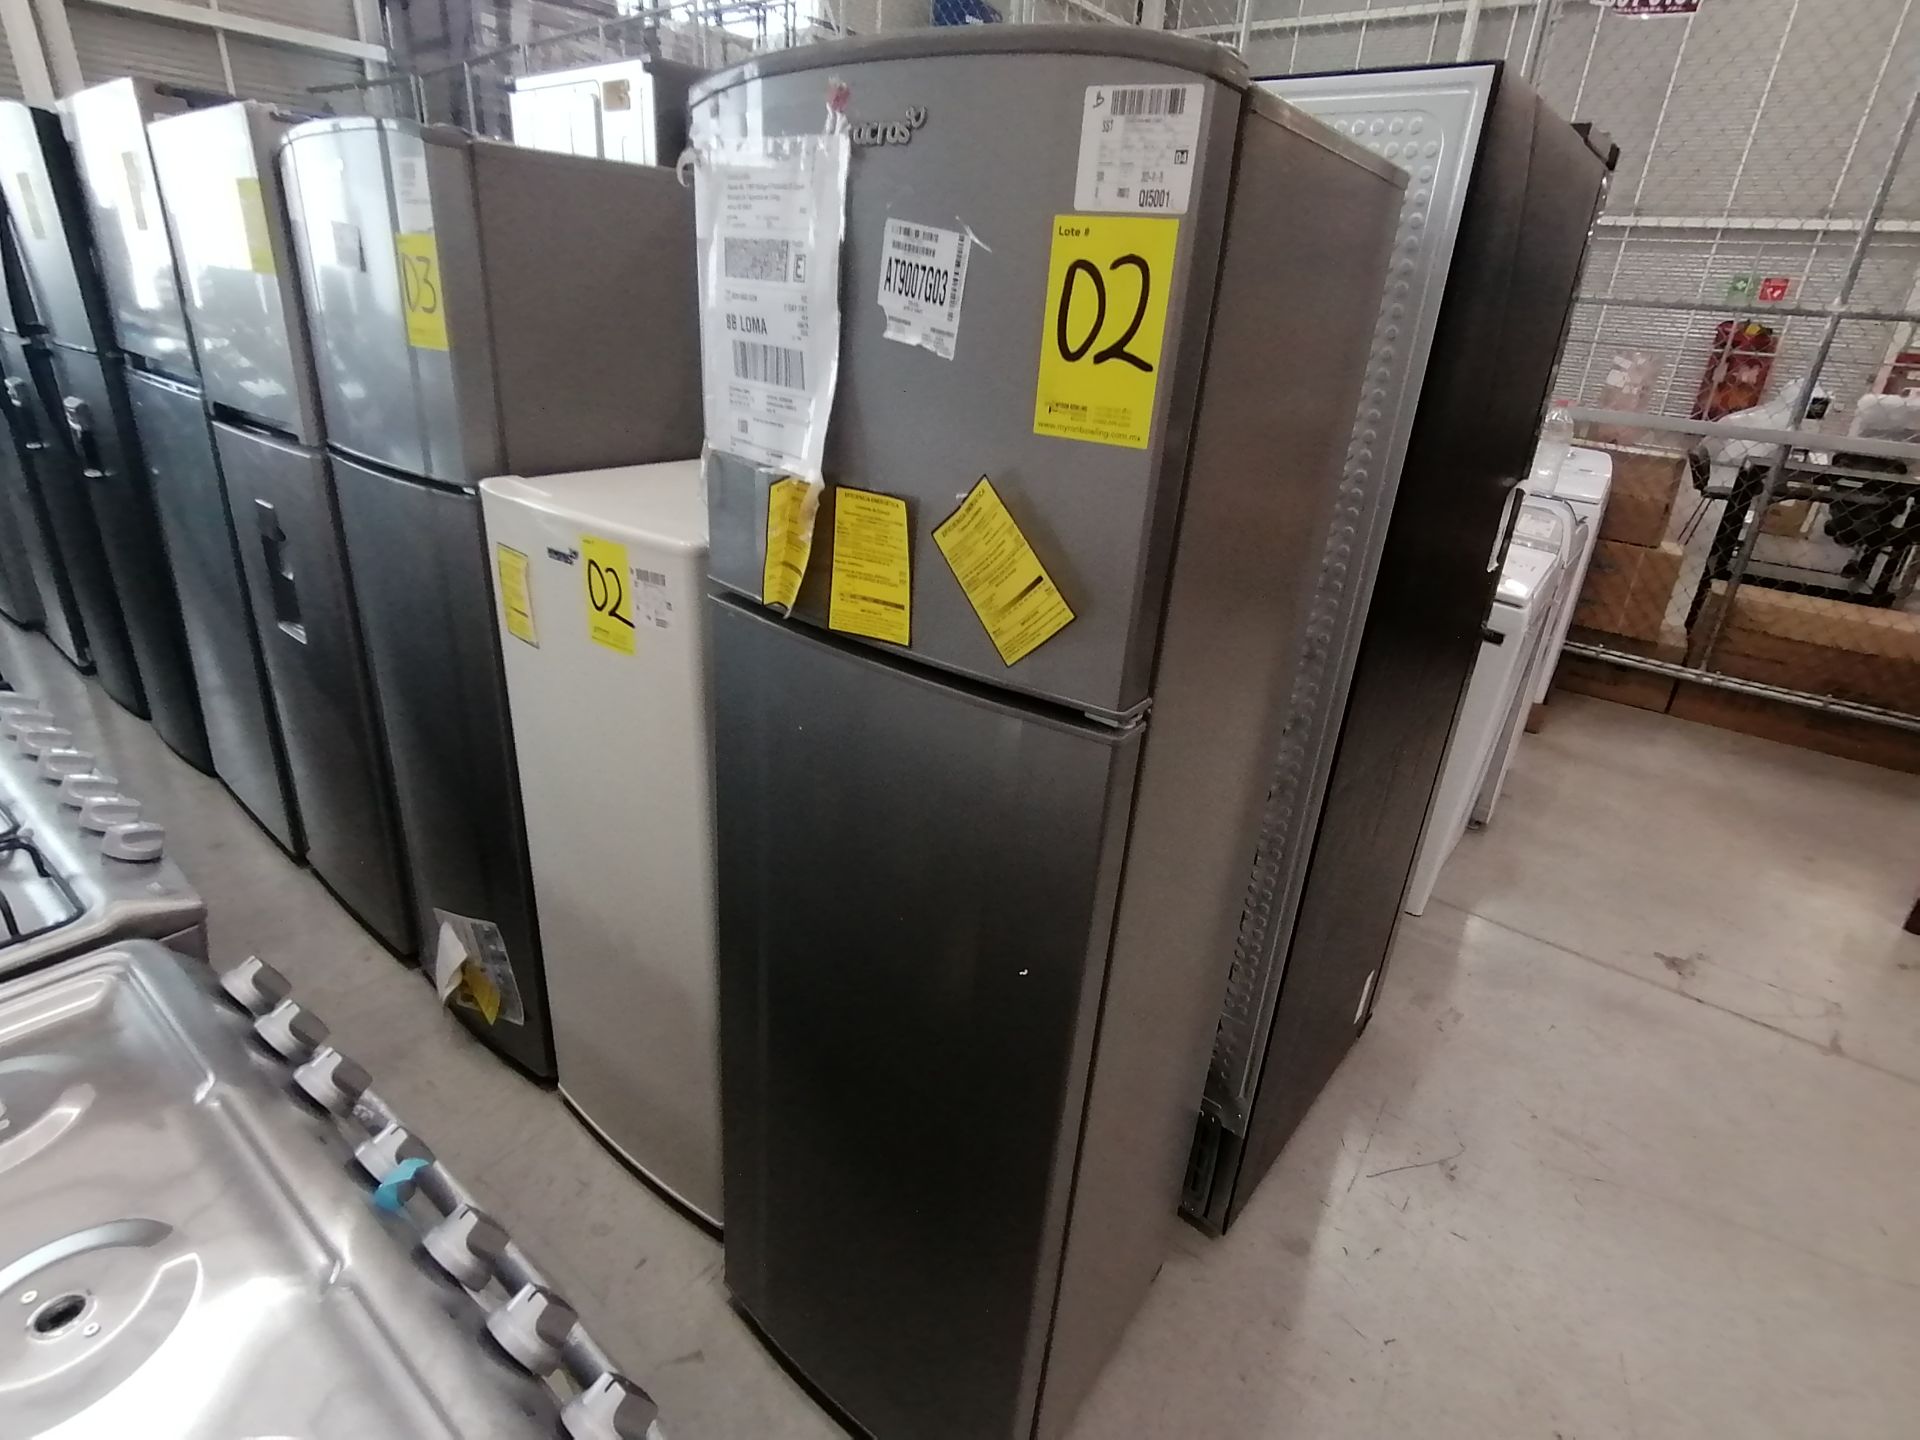 1 Refrigerador Marca Acros, Modelo ERT07TXLT, Serie VRA4436928, Color Blanco, Golpeado, Favor de in